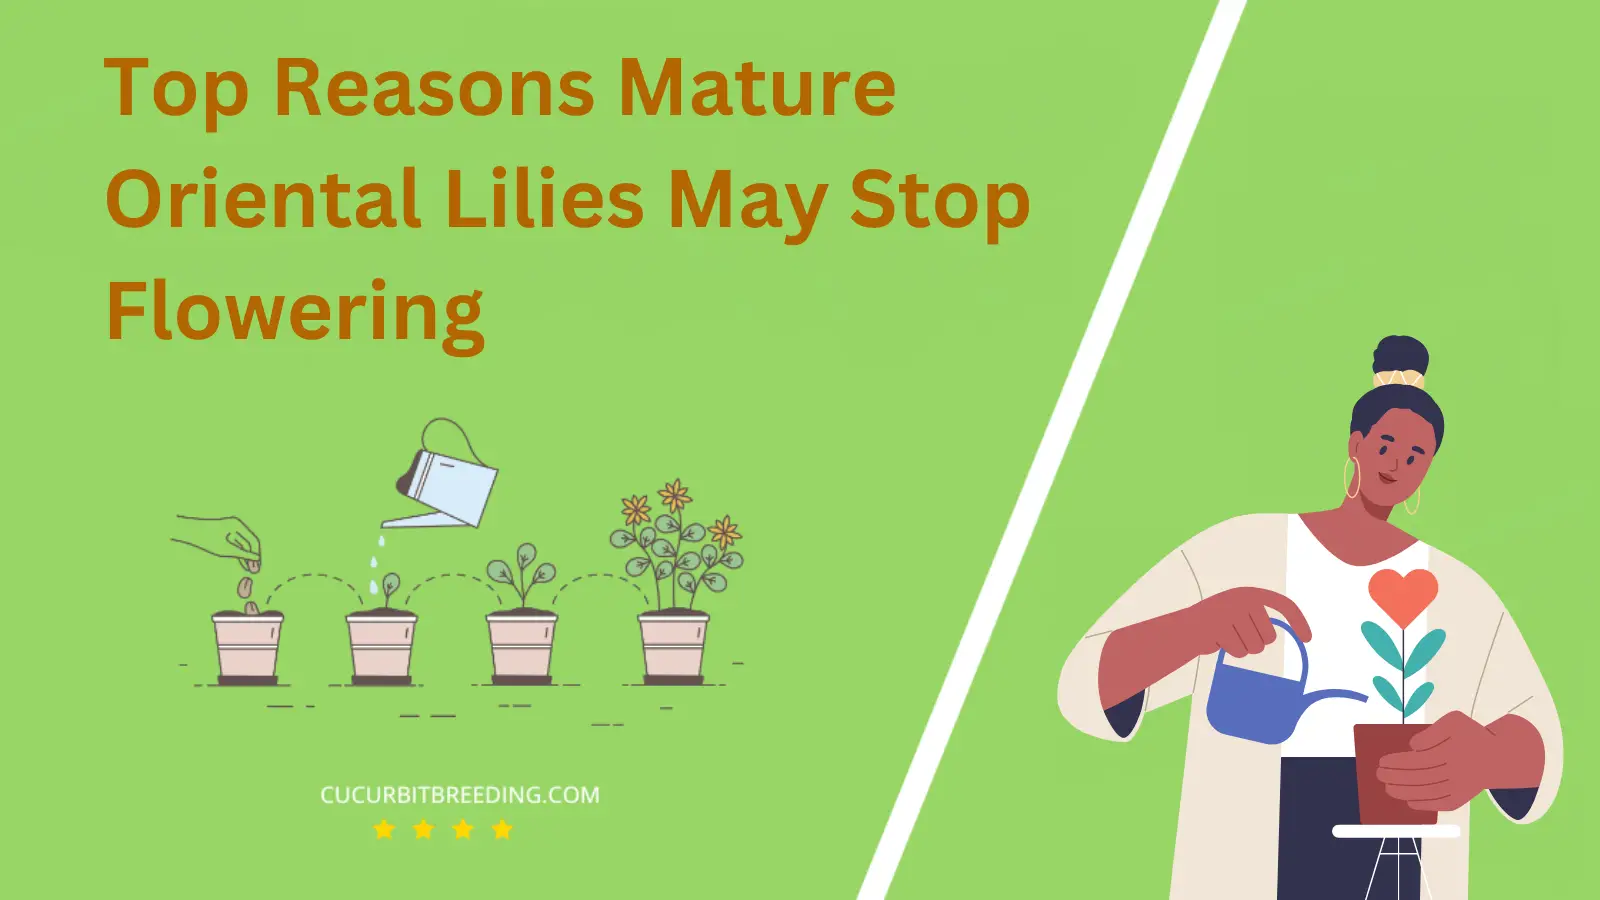 Top Reasons Mature Oriental Lilies May Stop Flowering